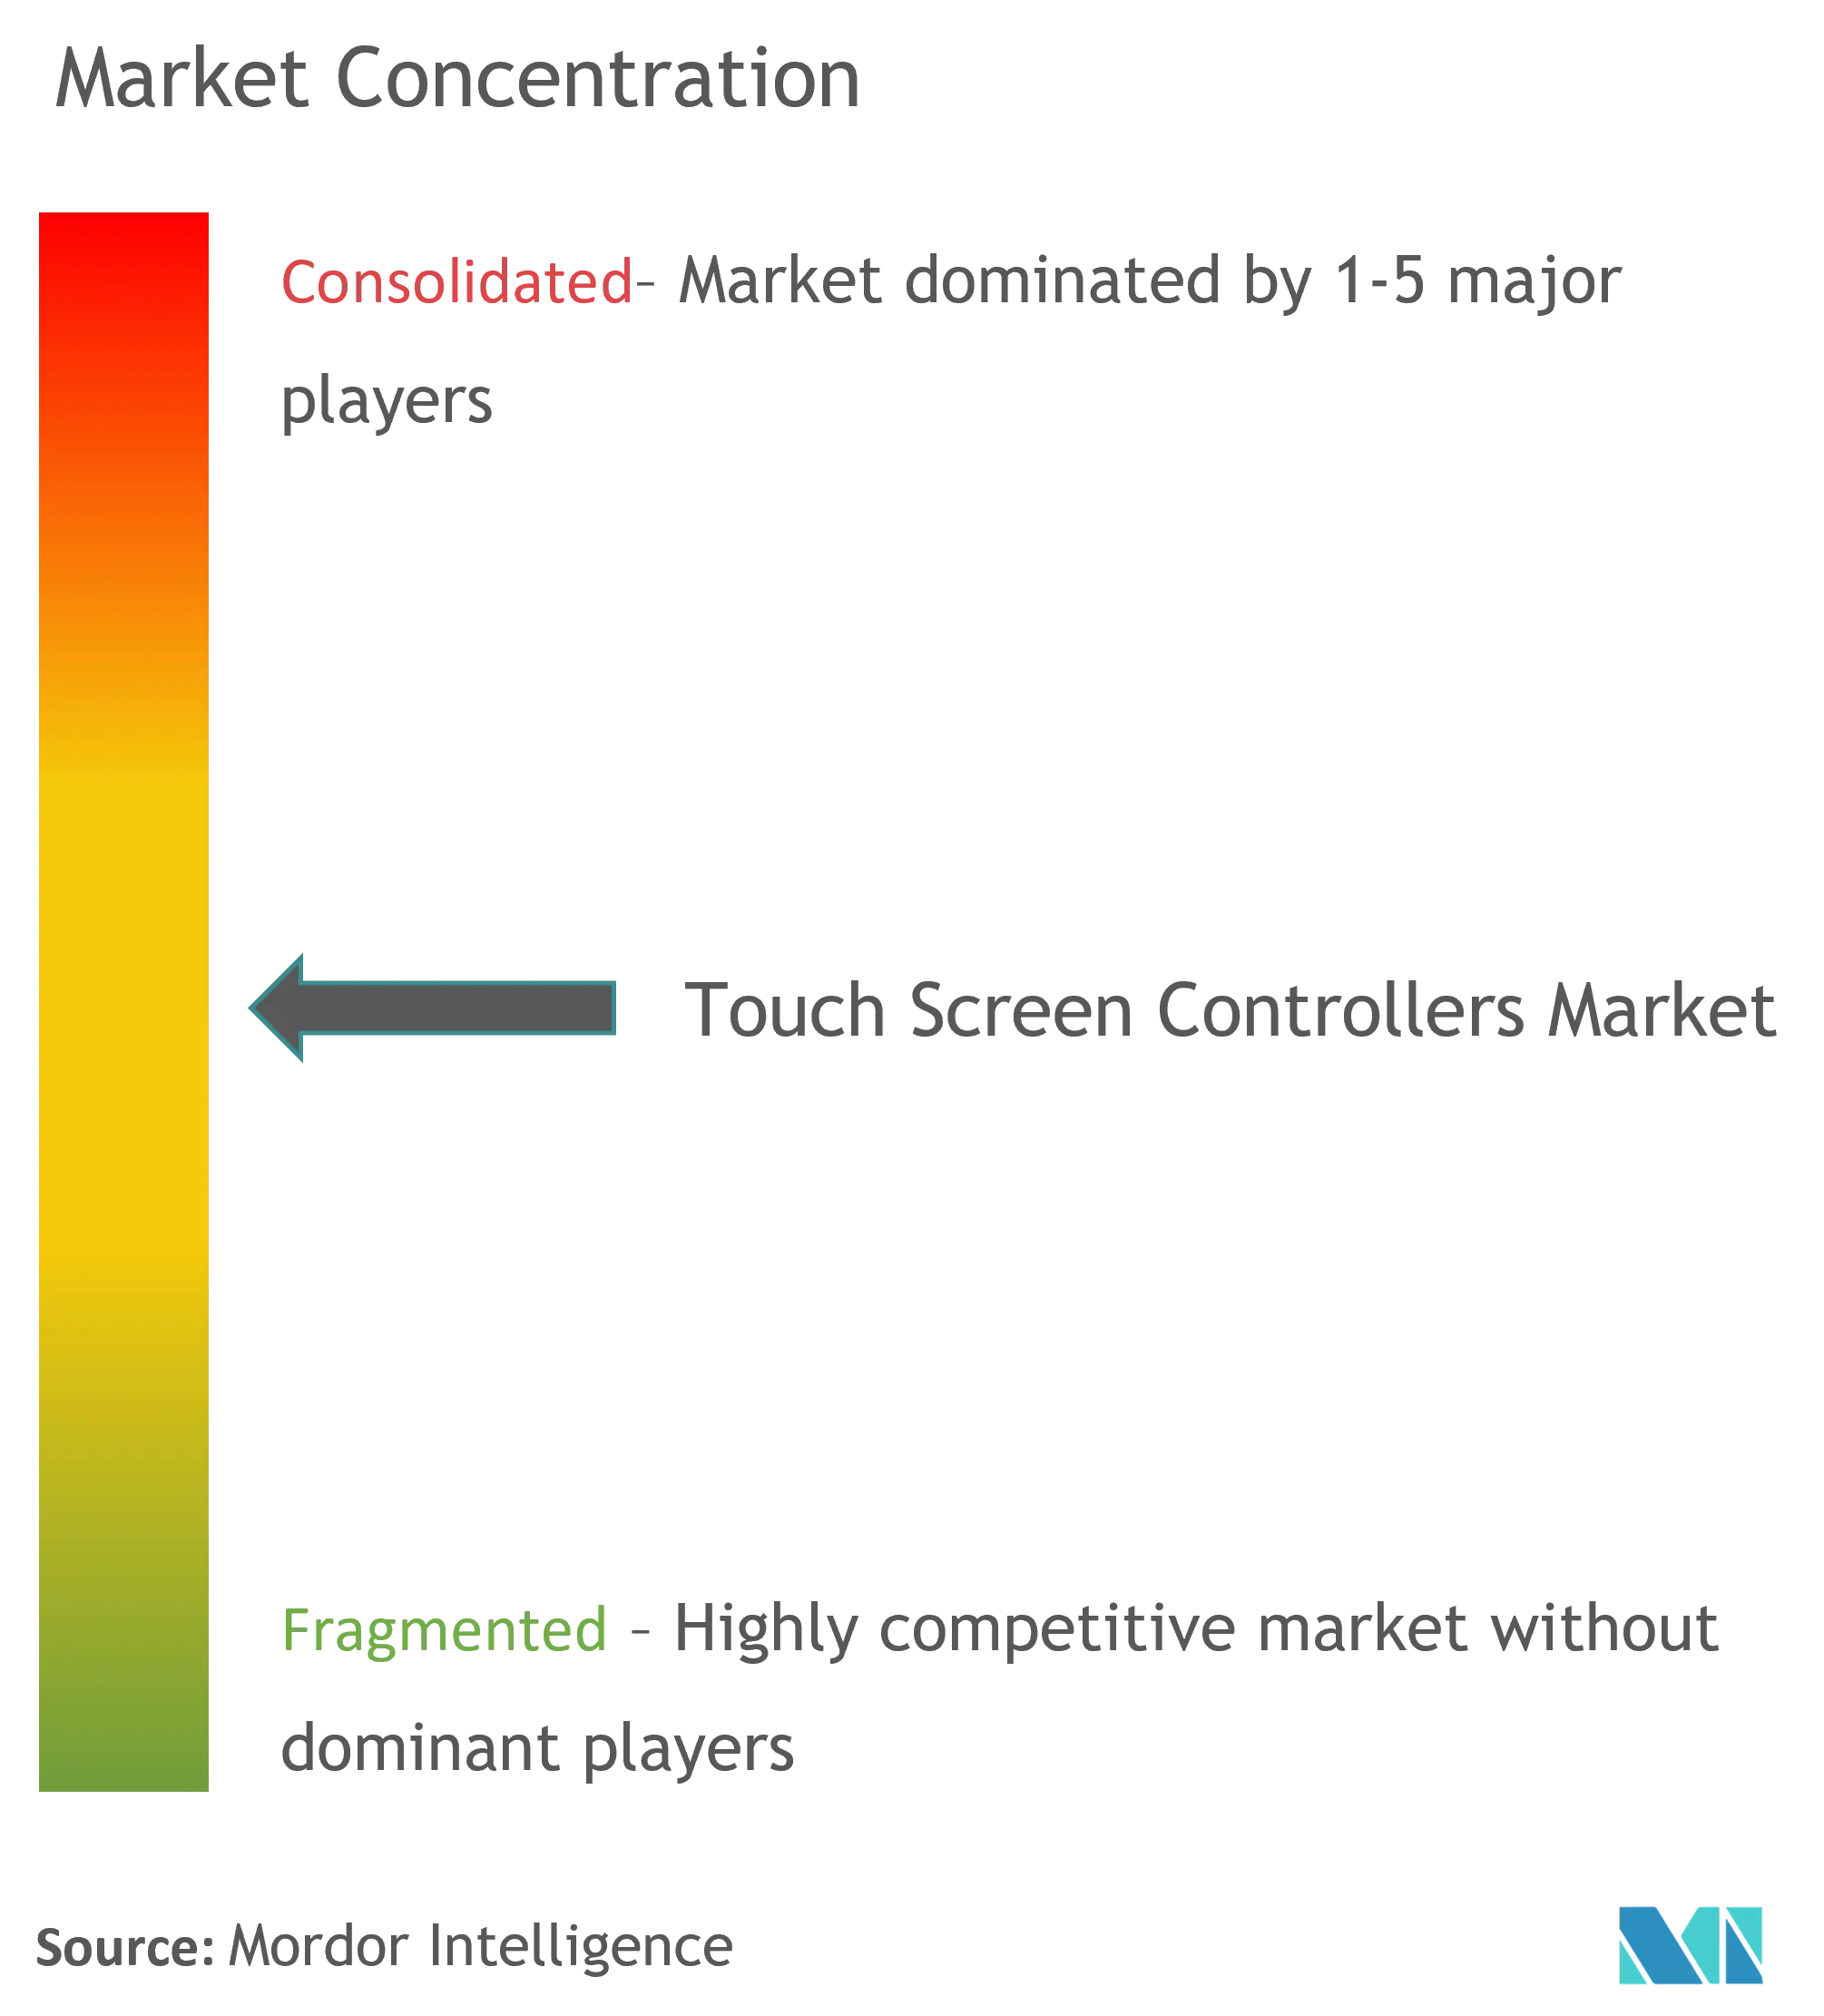 Marktkonzentration für Touchscreen-Controller